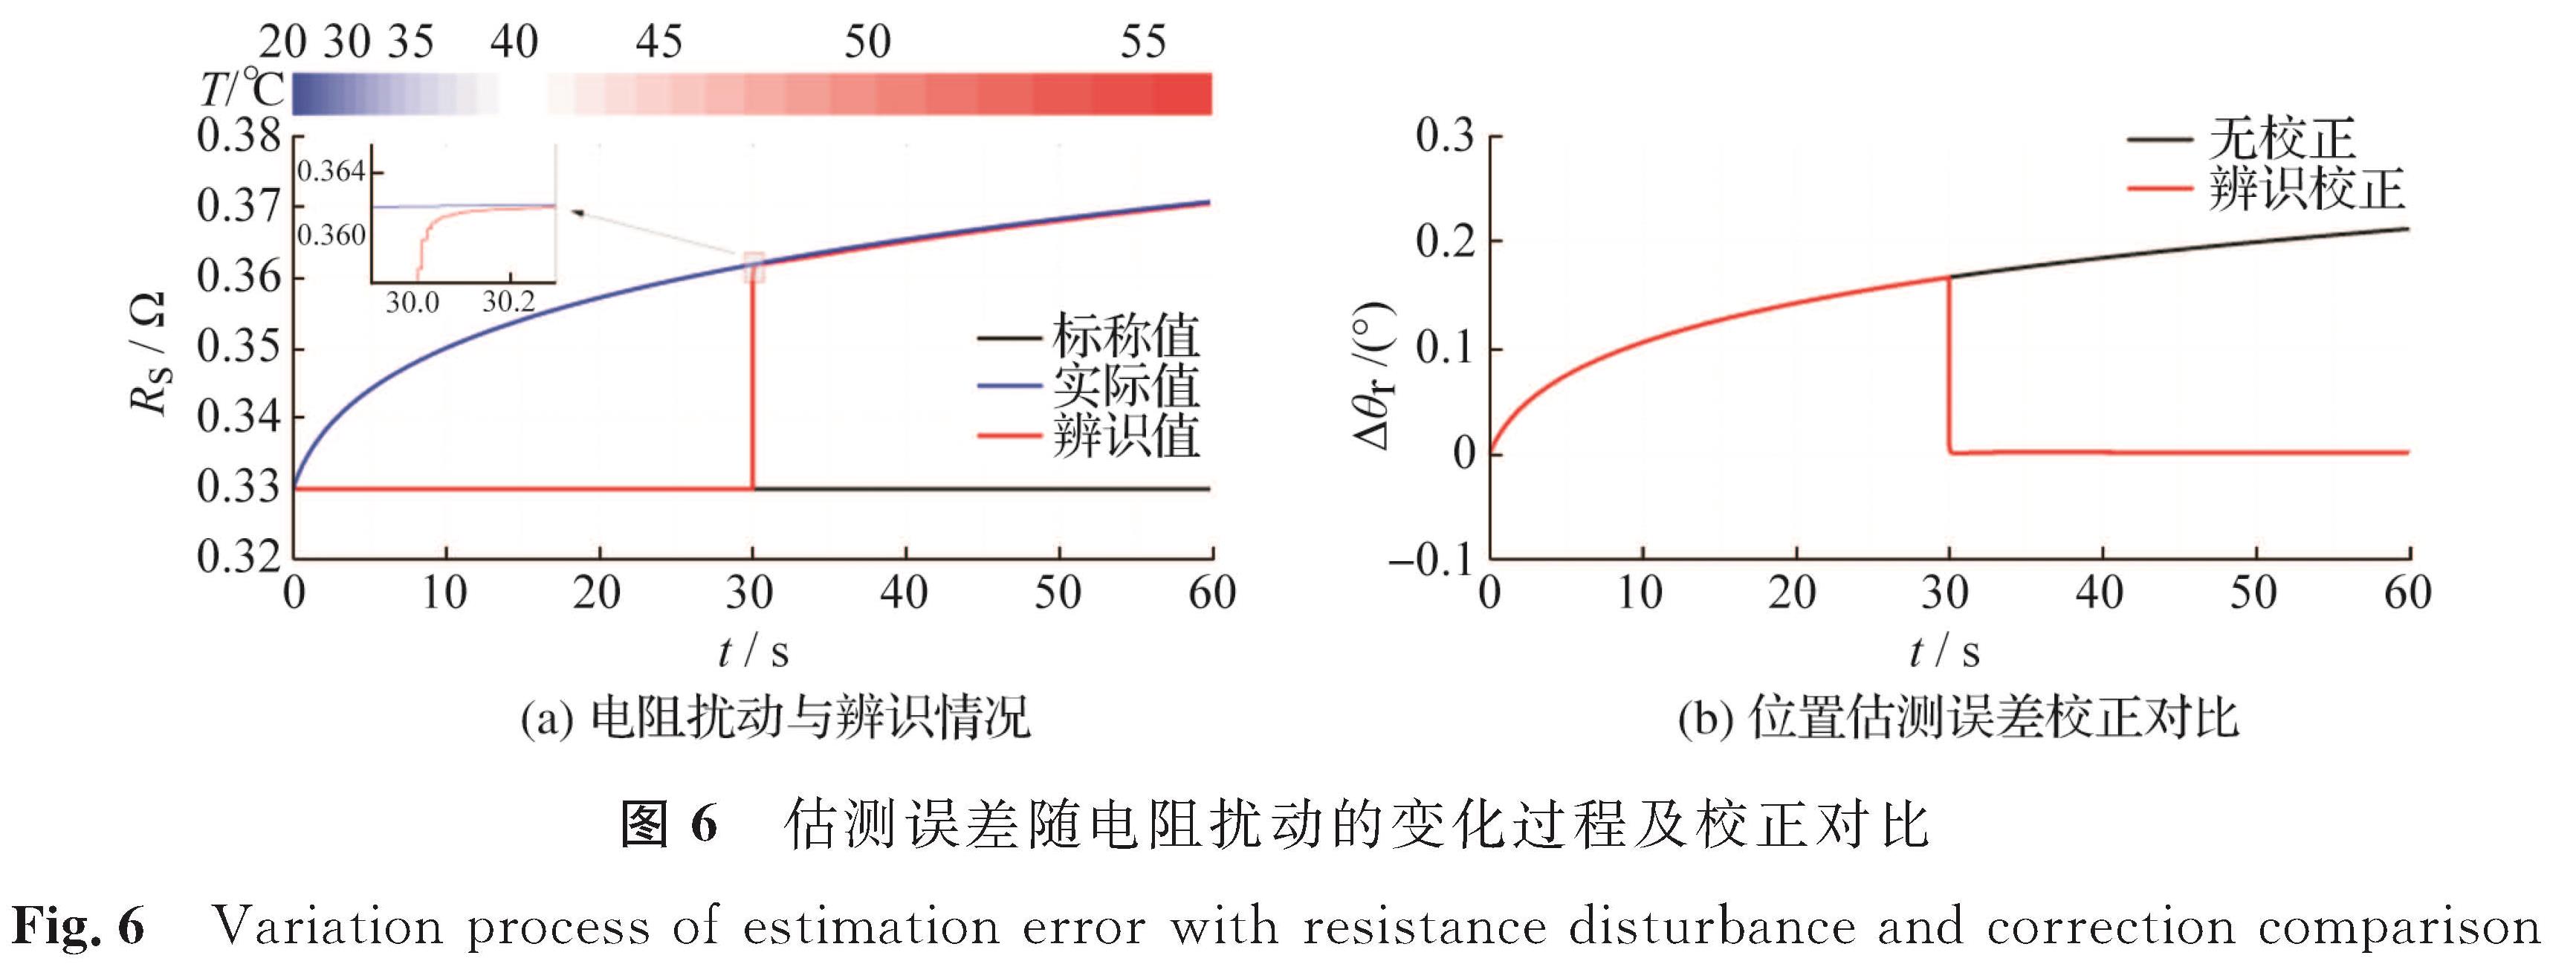 图6 估测误差随电阻扰动的变化过程及校正对比<br/>Fig.6 Variation process of estimation error with resistance disturbance and correction comparison